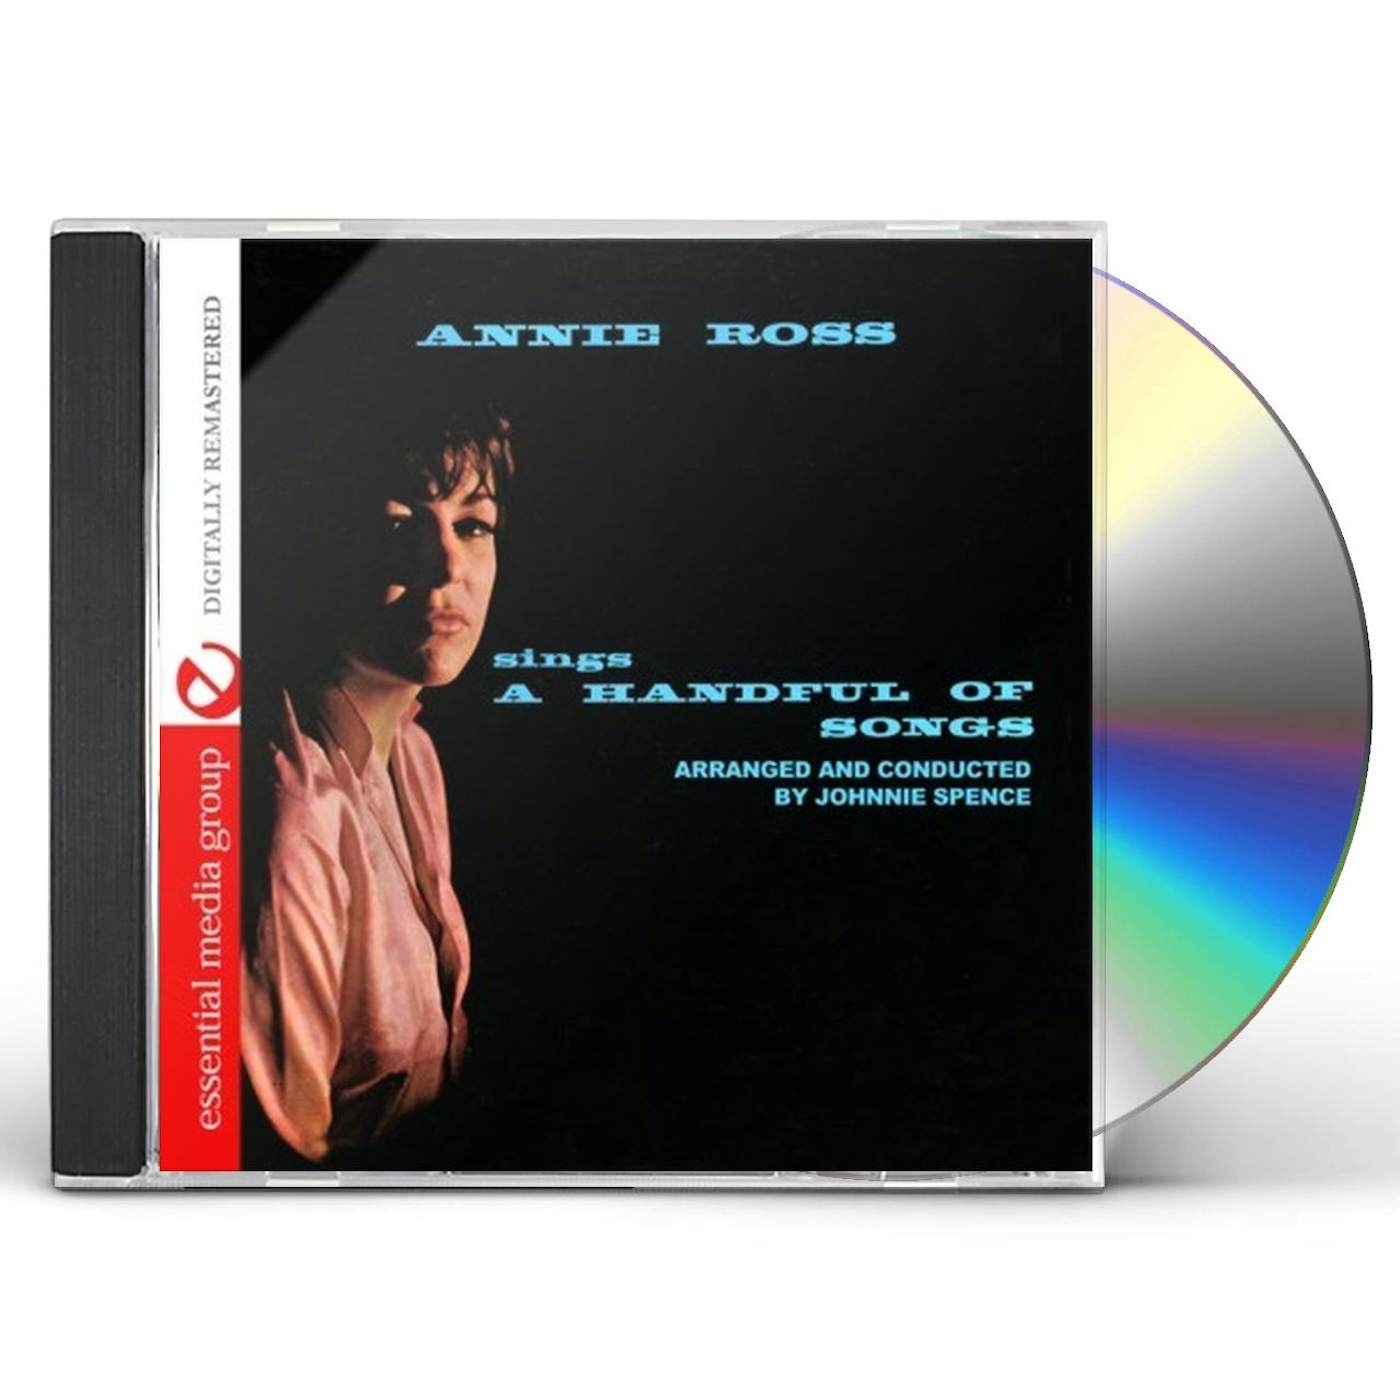 Annie Ross SINGS A HANDFUL OF SONGS CD